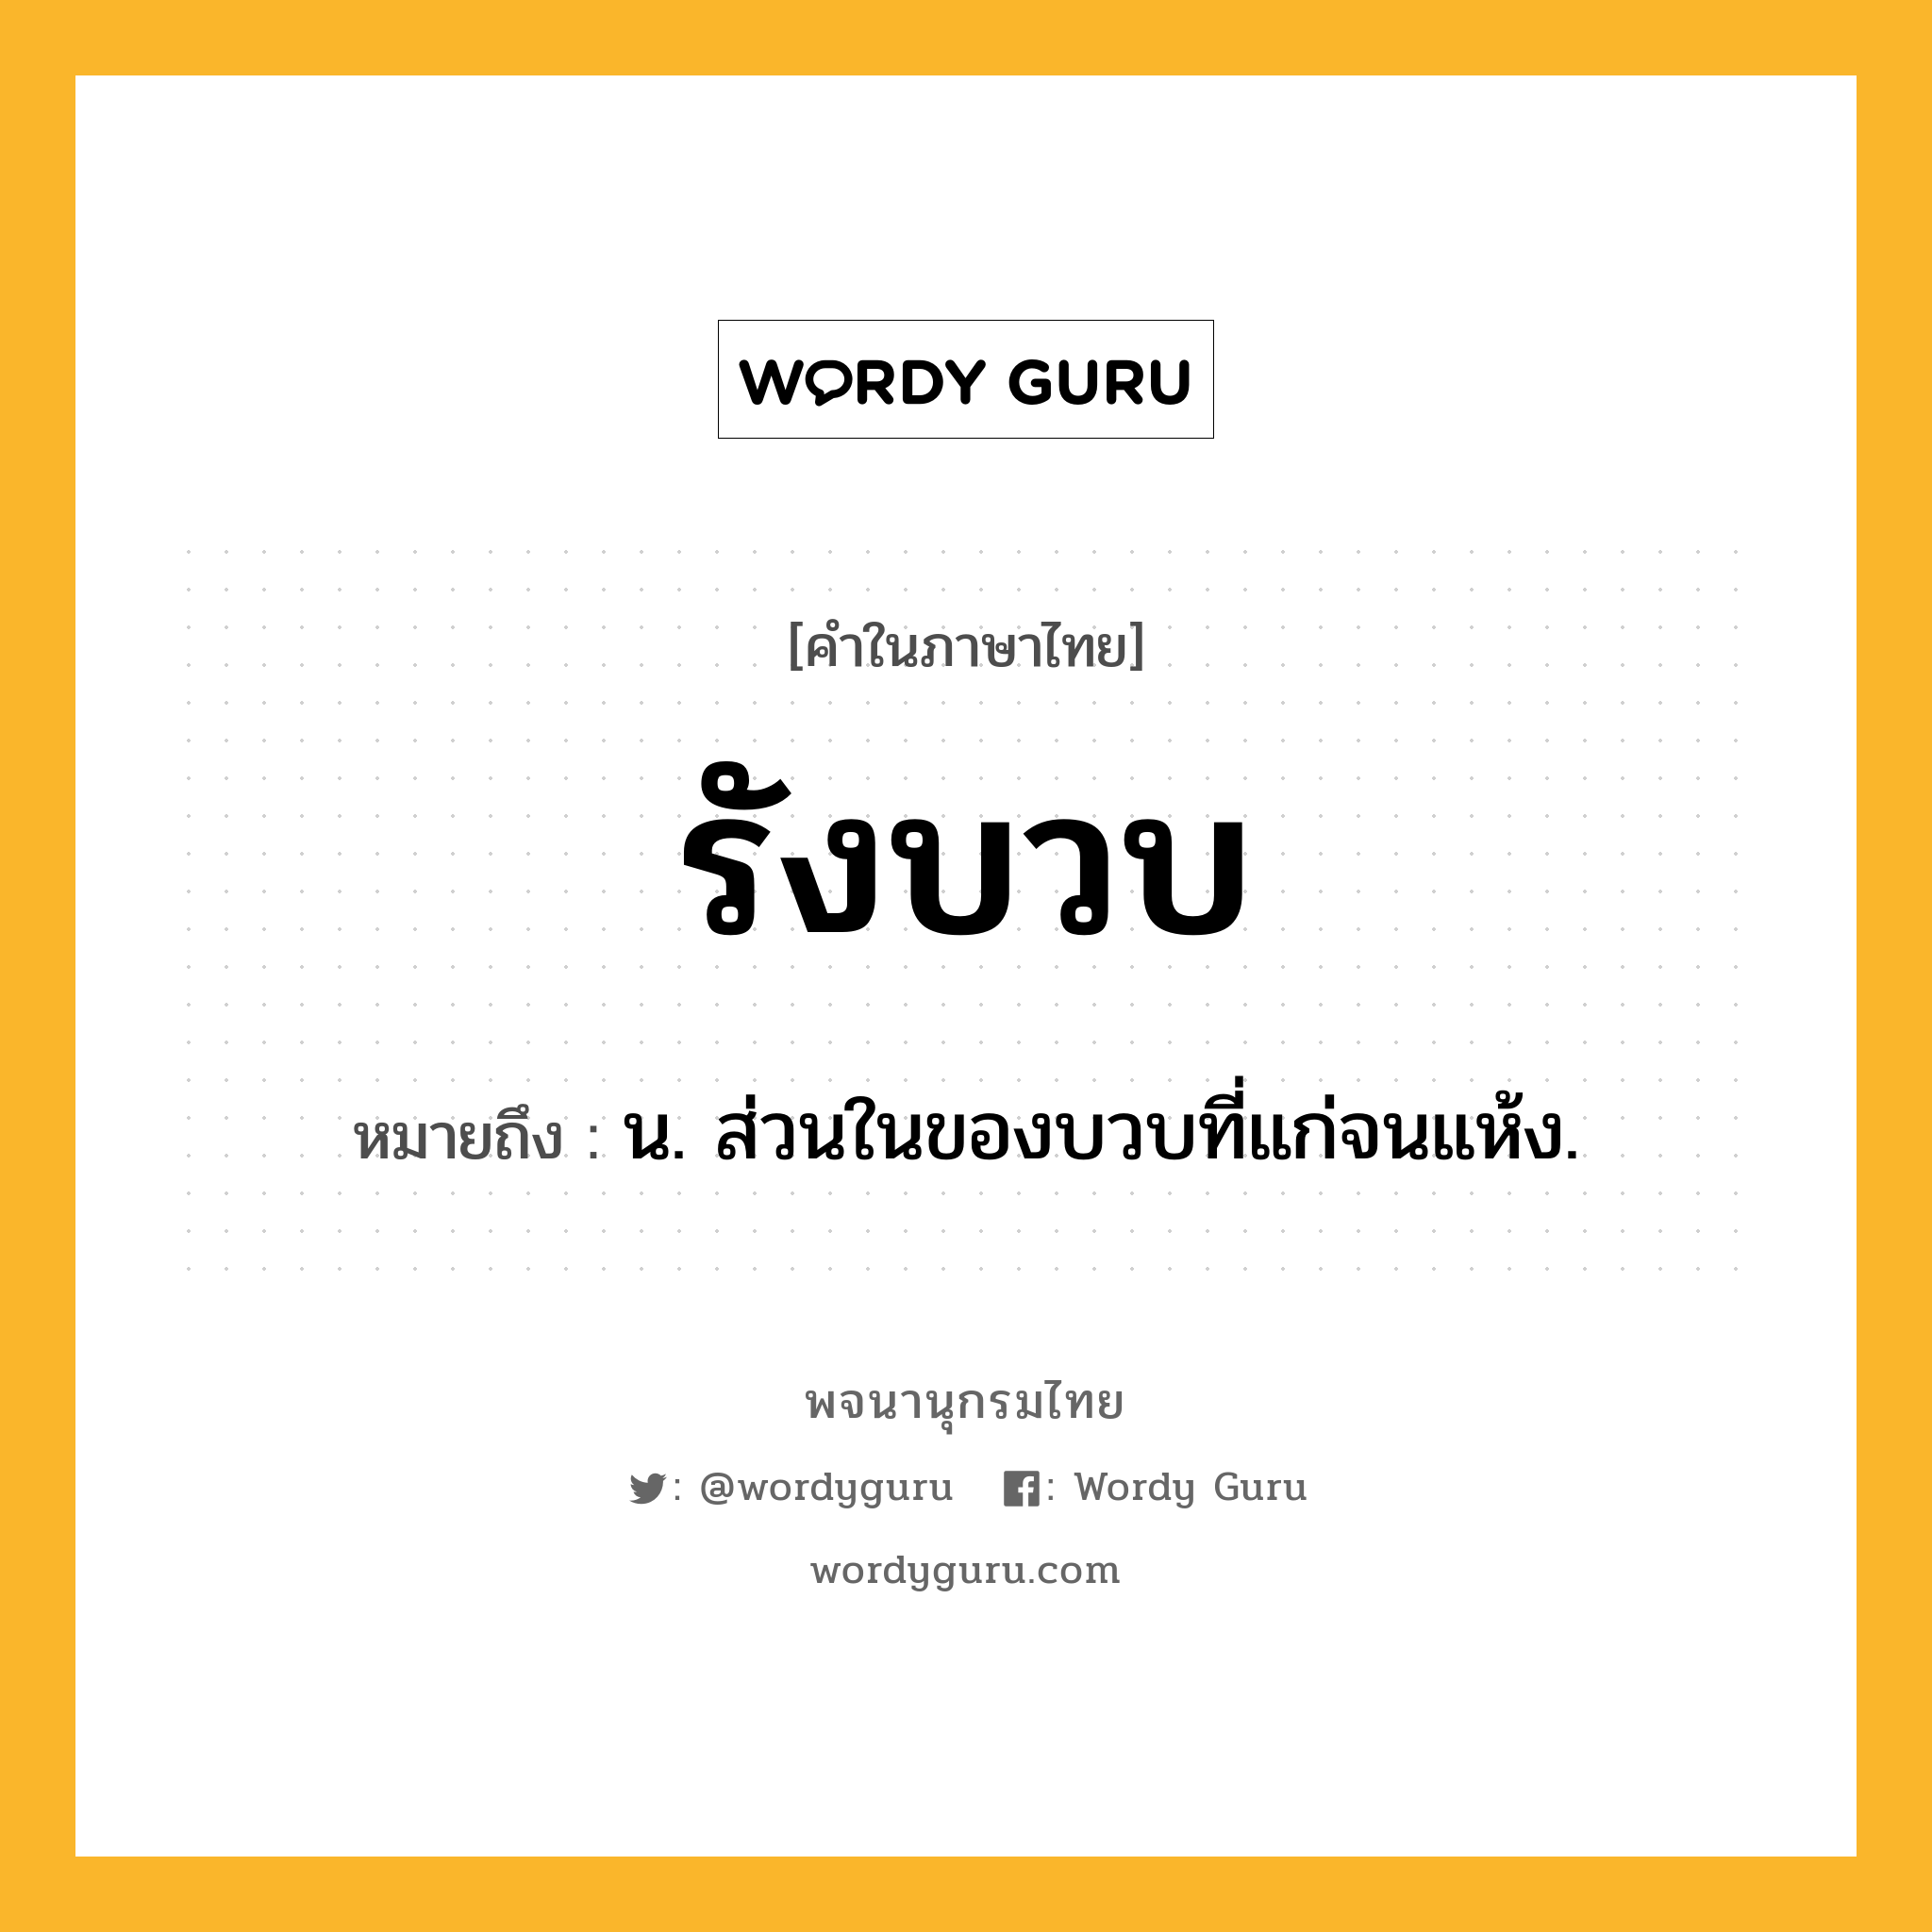 รังบวบ หมายถึงอะไร?, คำในภาษาไทย รังบวบ หมายถึง น. ส่วนในของบวบที่แก่จนแห้ง.